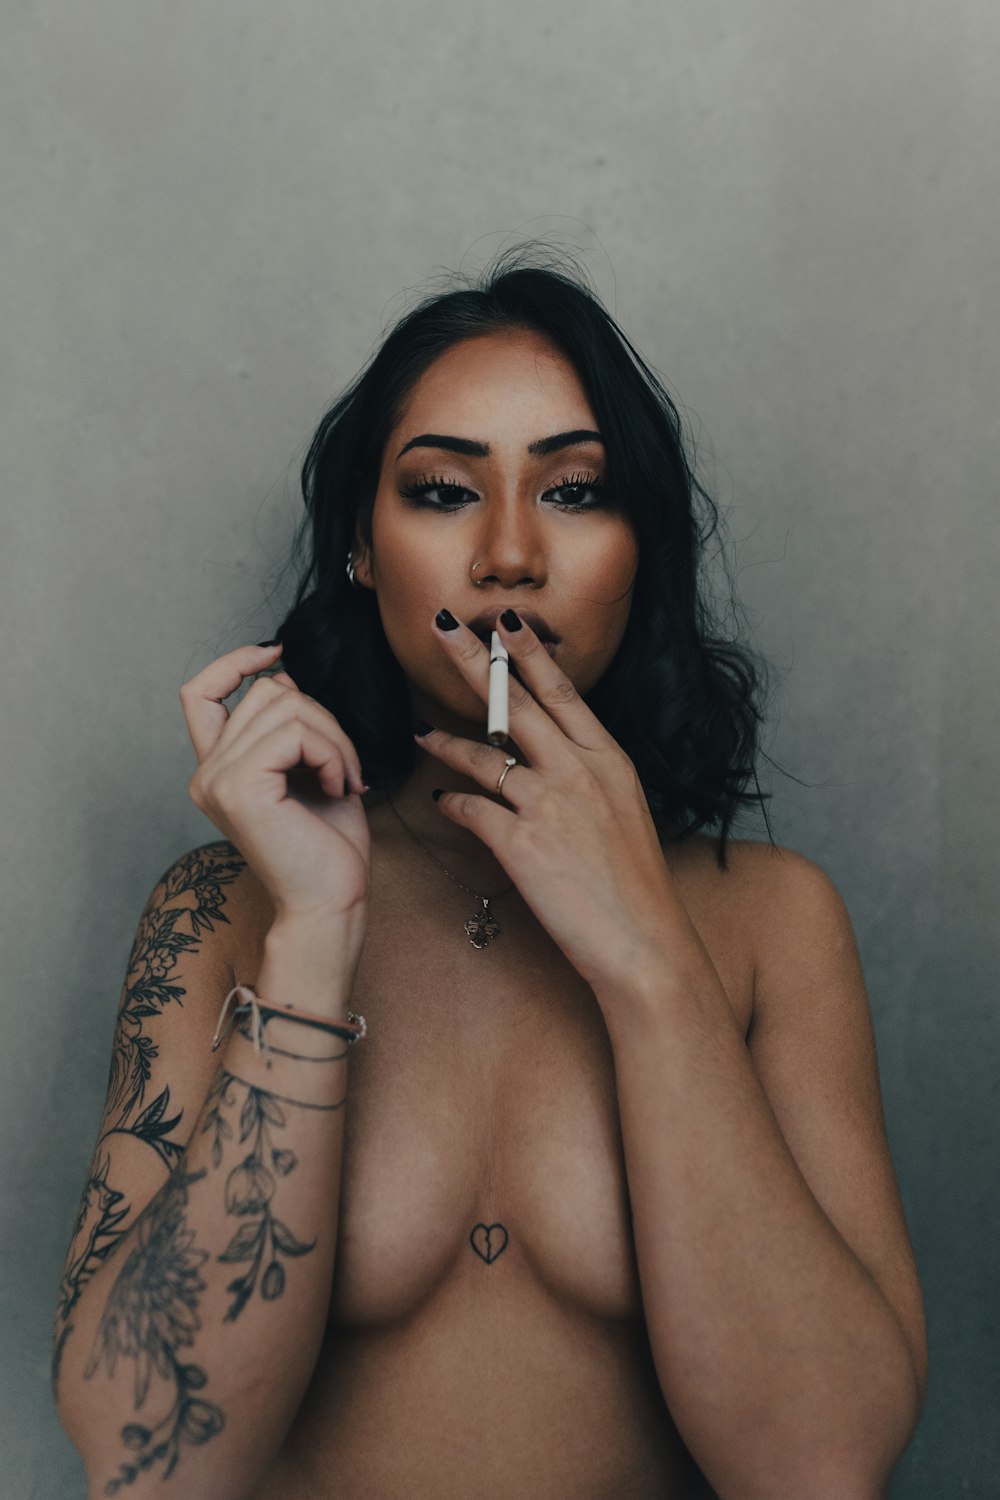 adam criscione reccomend naked women smoking cigarettes pic